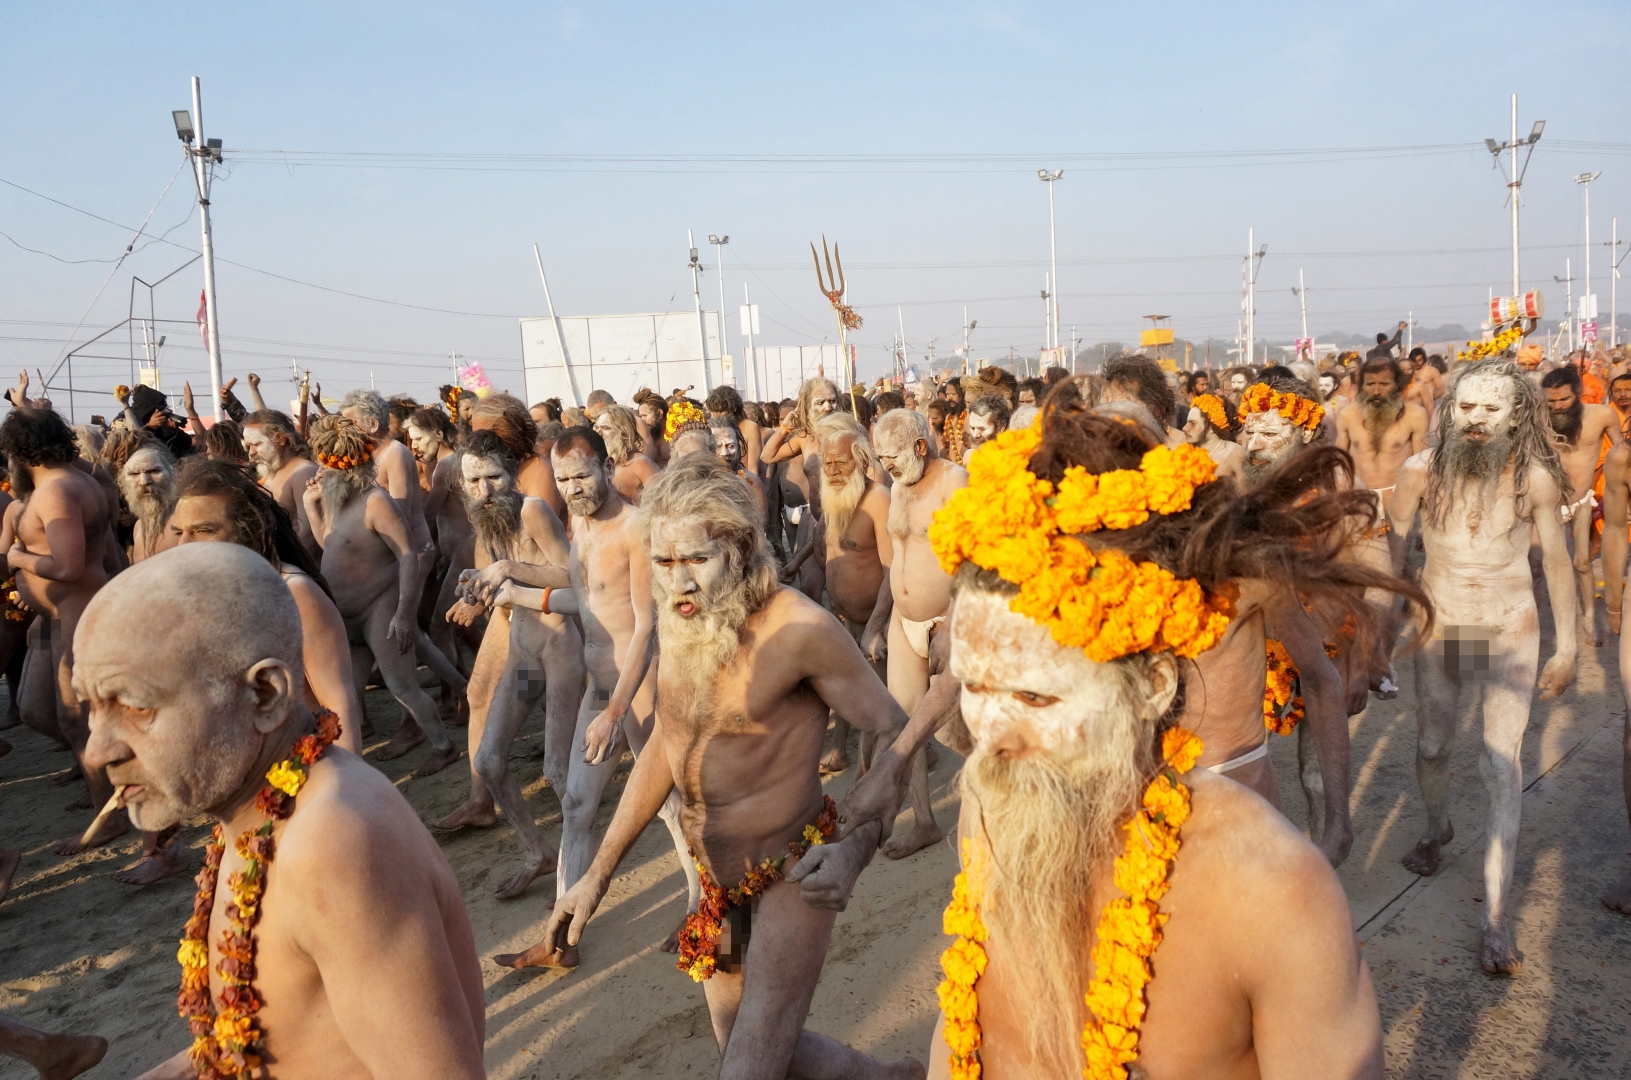 Нага Баба первыми идут на омовение в место слияние священных рек Ганги, Ямуны и Сарасвати — центральное событие Кумбха Мелы